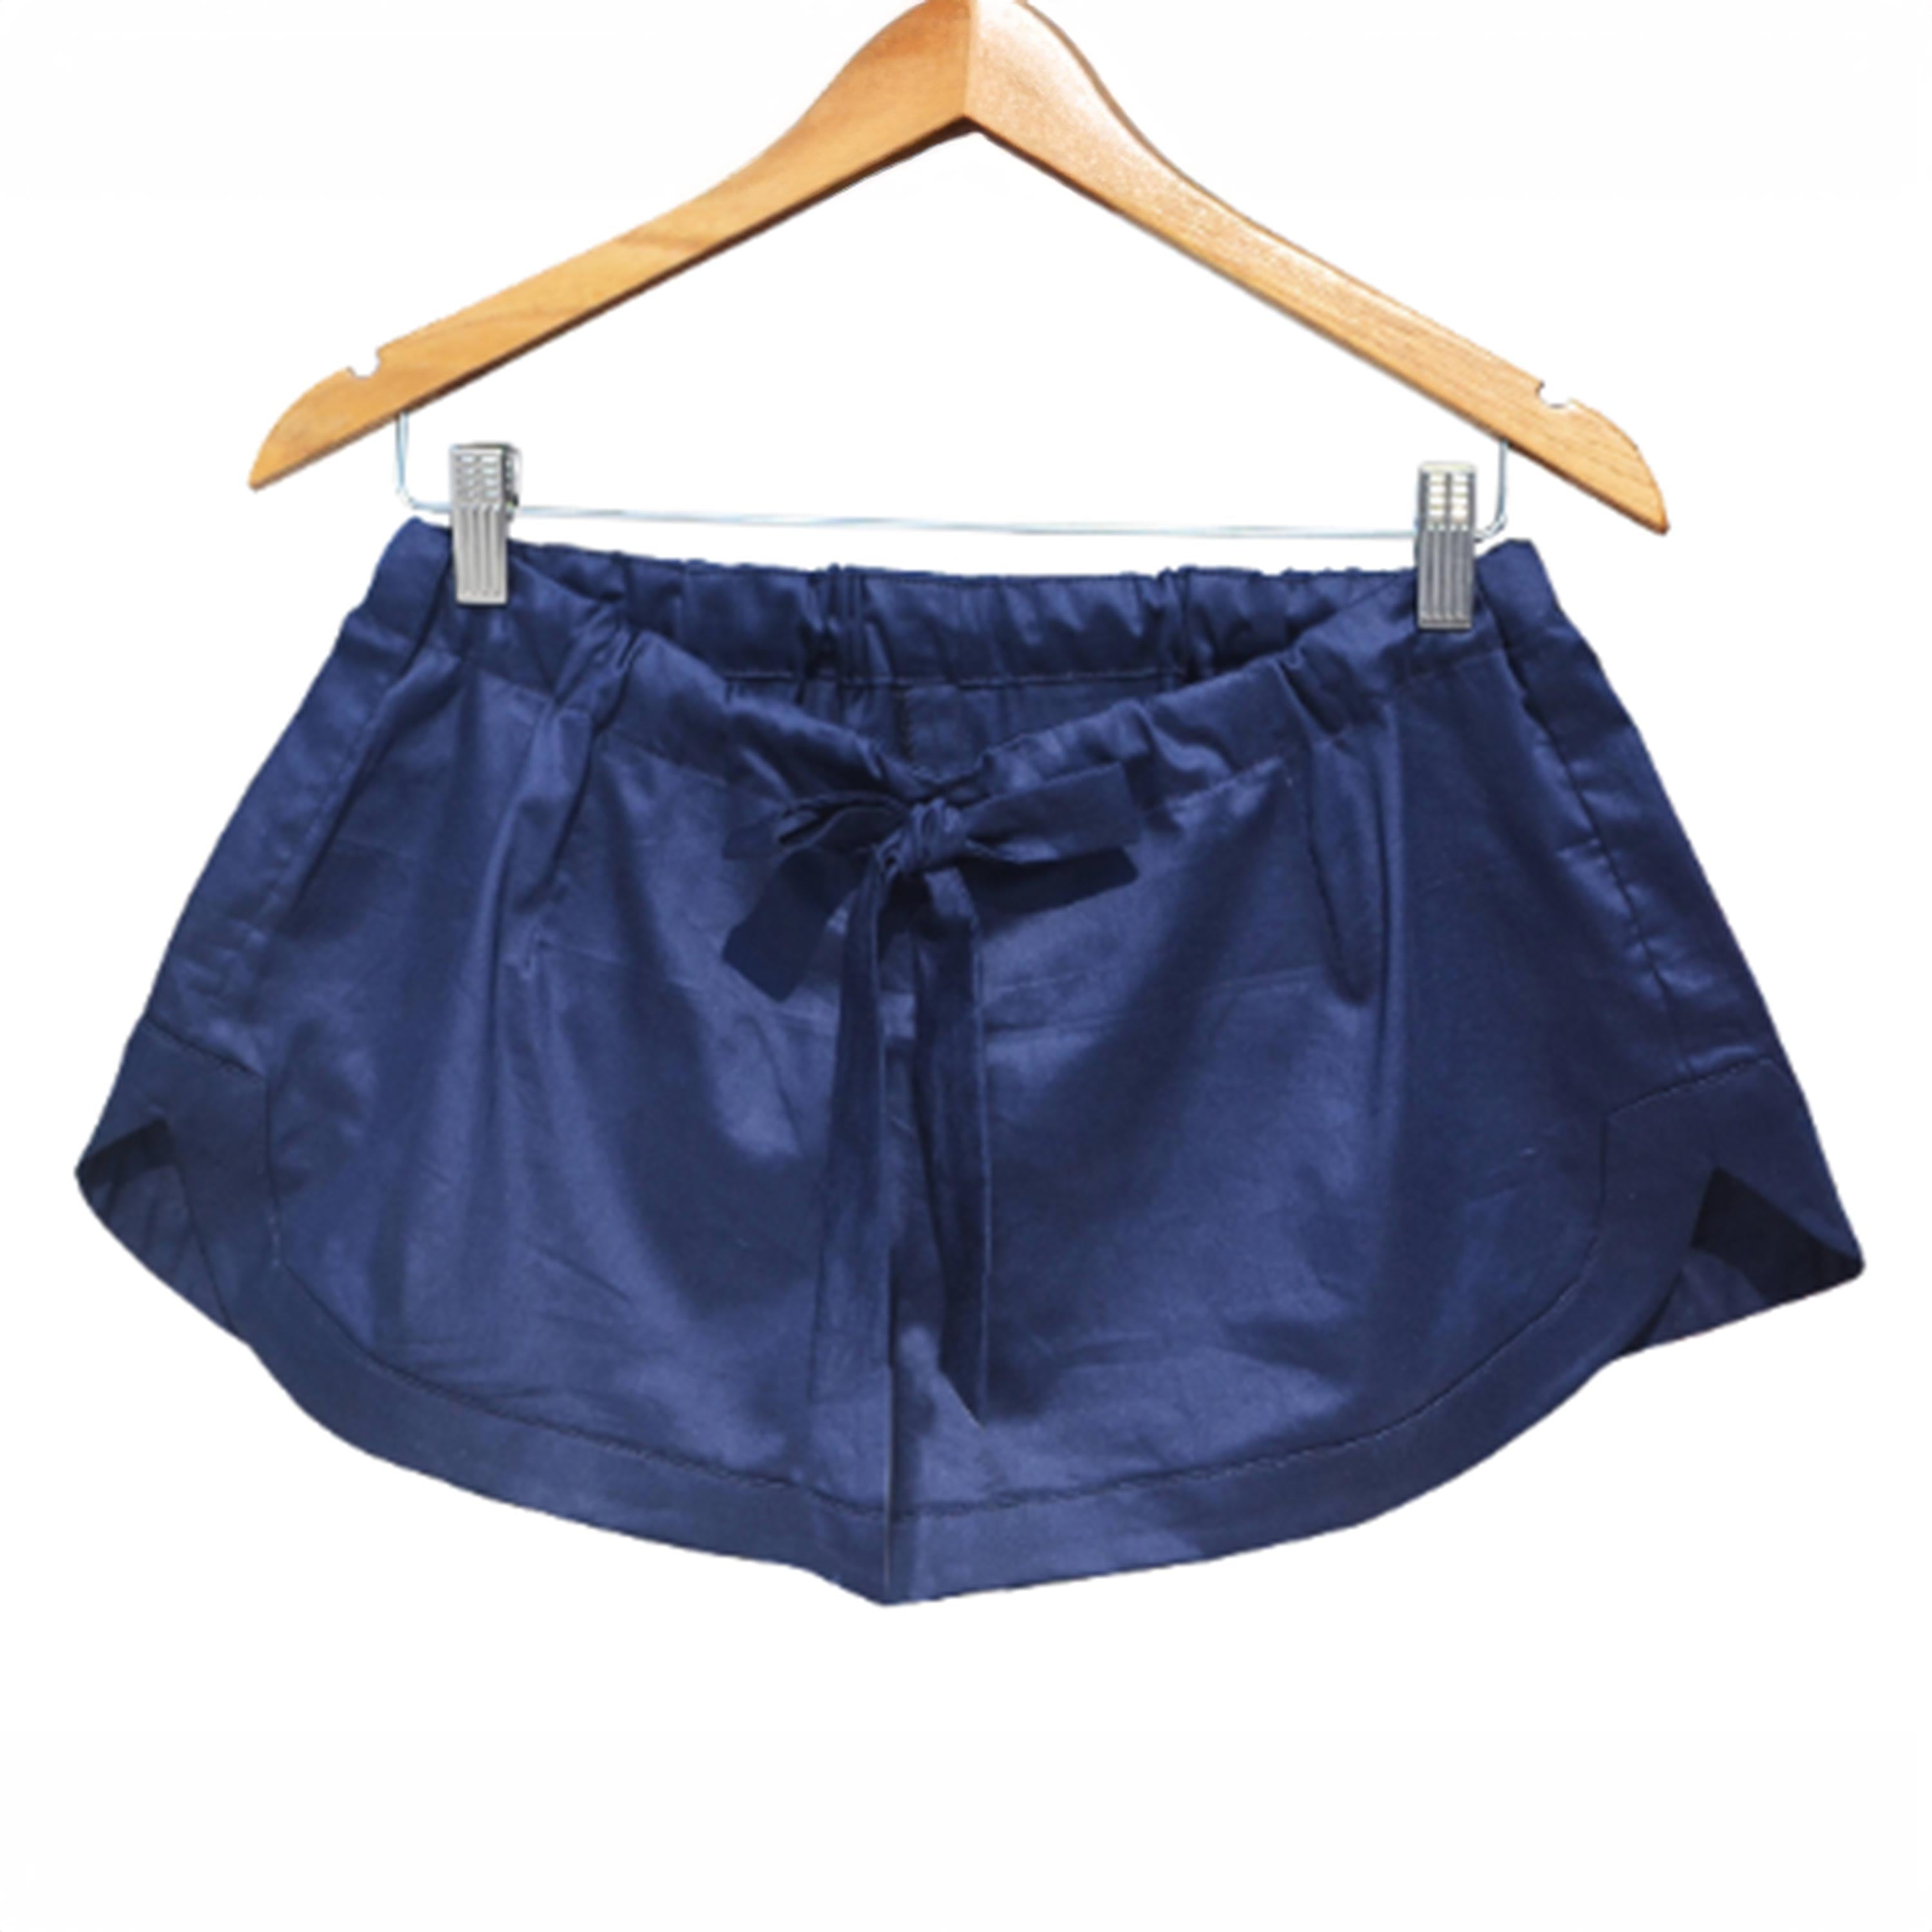 Navy Blue Cotton Shorts, Waist Tie Shorts